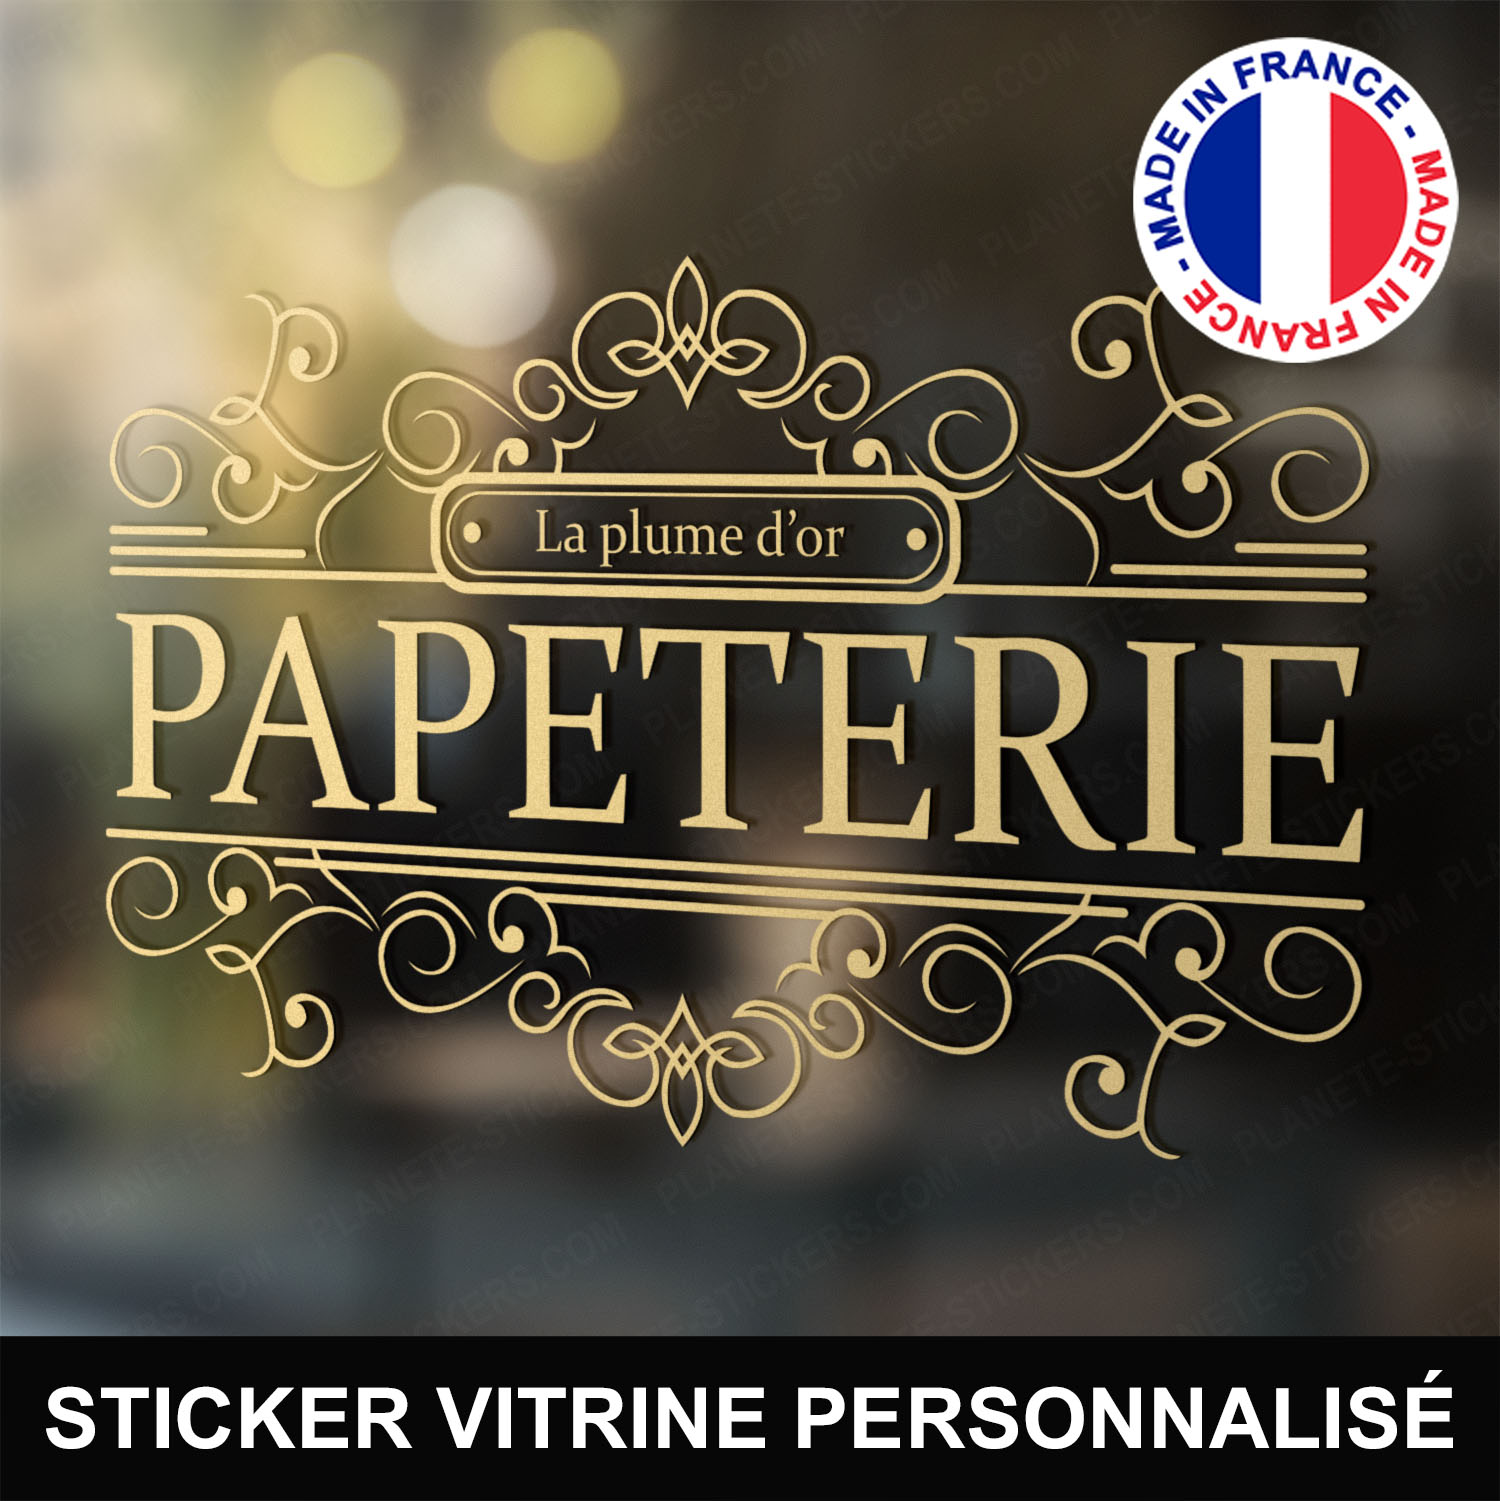 ref5papeterievitrine-stickers-papeterie-vitrine-sticker-personnalisé-autocollant-pro-papetier-vitre-professionnel-logo-arabesque